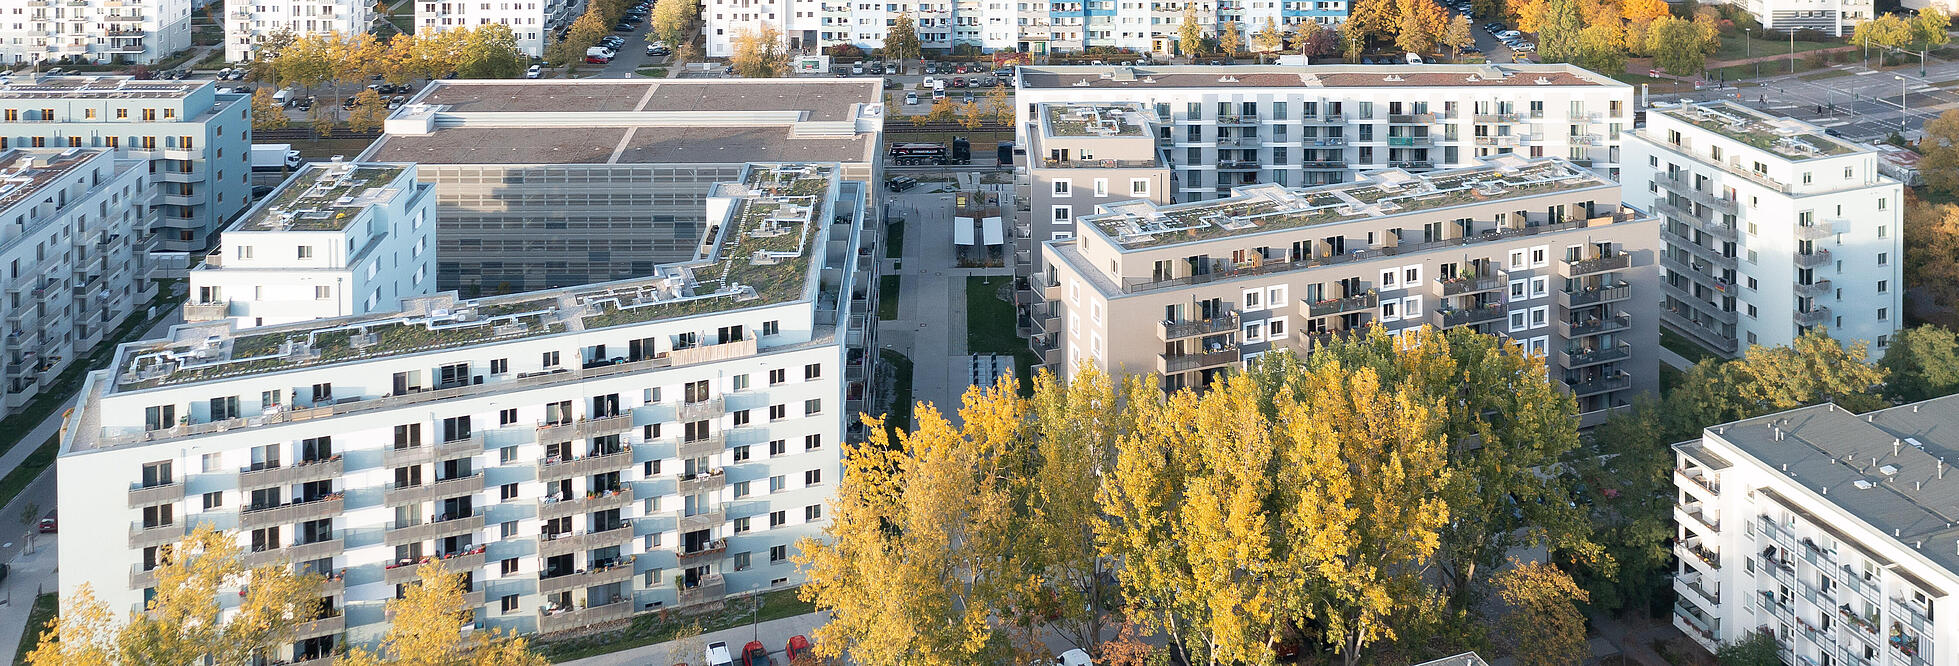 Luftaufnahme einer neugebauten Wohnanlage mit 255 Wohnungen